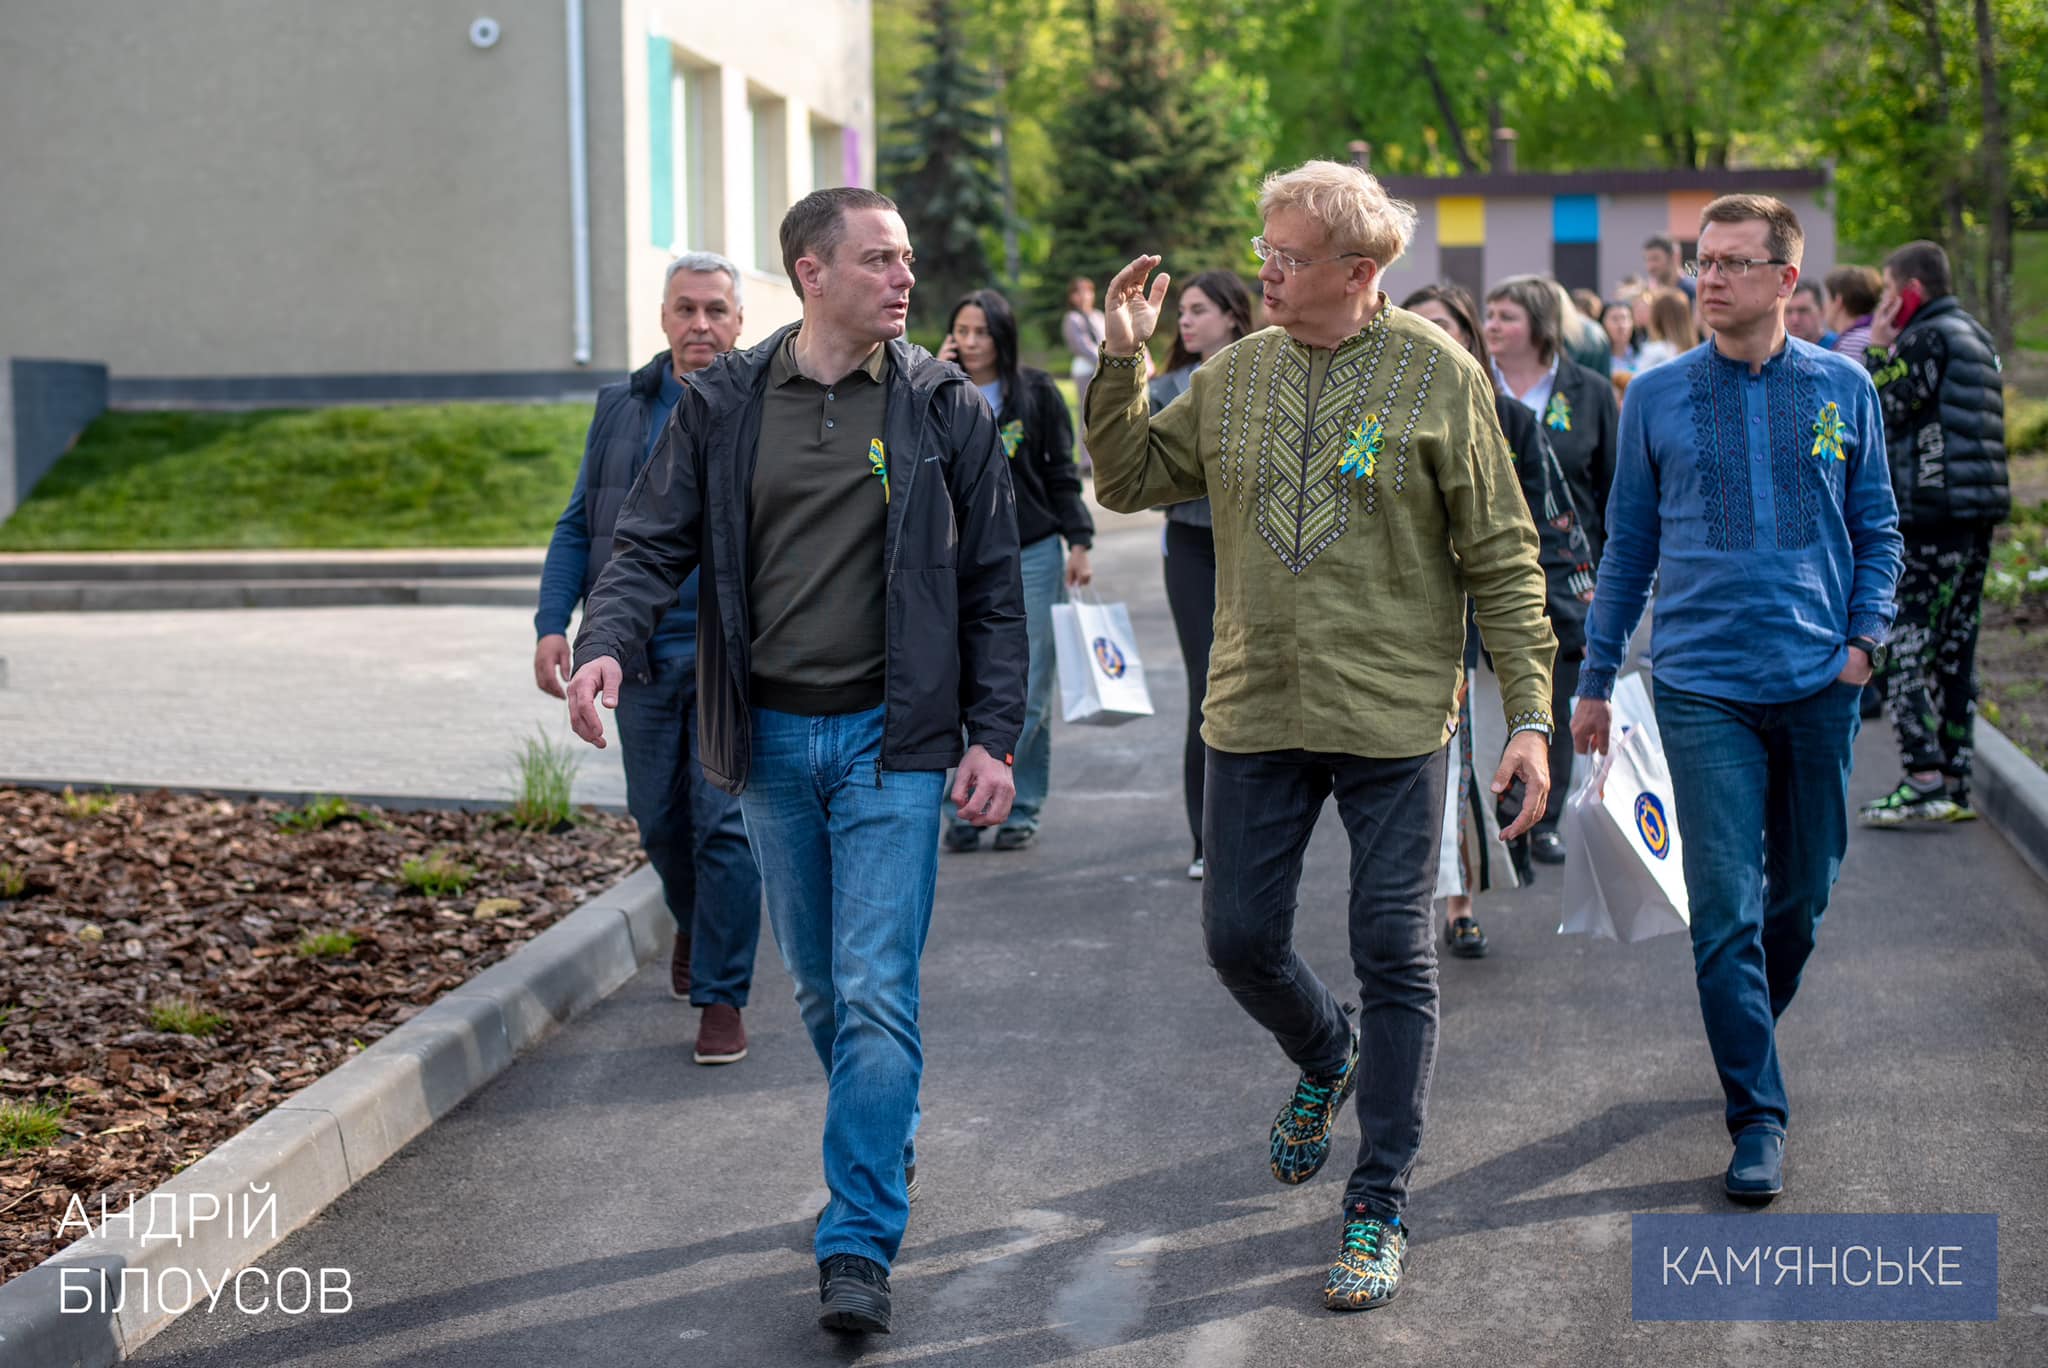 Мэр Каменского Андрей Белоусов объявил об открытии новой школы - фото 5